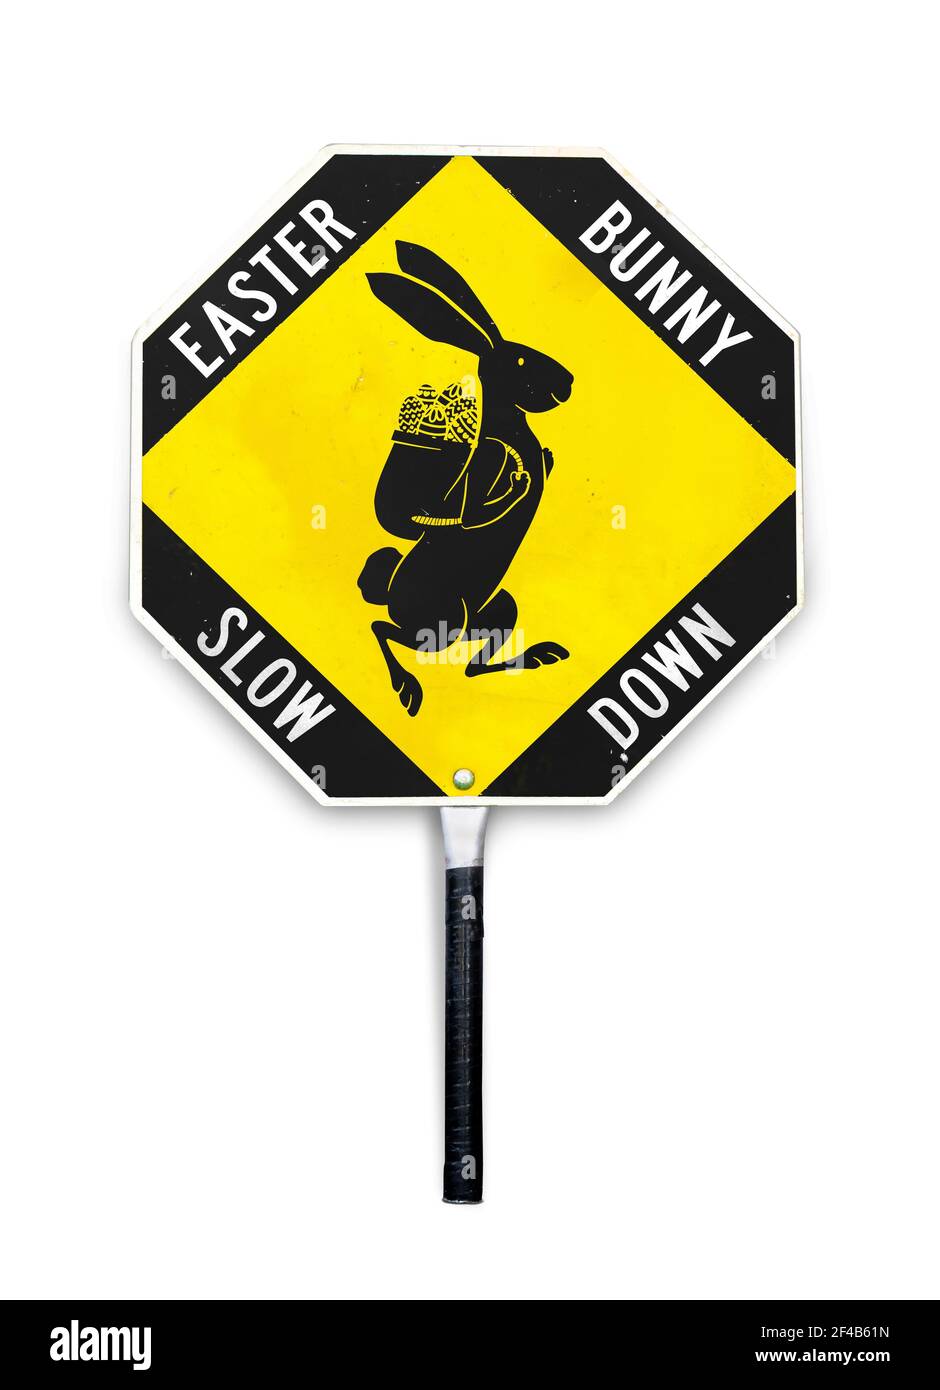 Slow down Schild, Osterhase überqueren. Ostern themed Verkehrswarnsignal, das durch Überqueren Wachen und in den Arbeitsbereichen verwendet wird. Gelbes und schwarzes Metallschild. Stockfoto